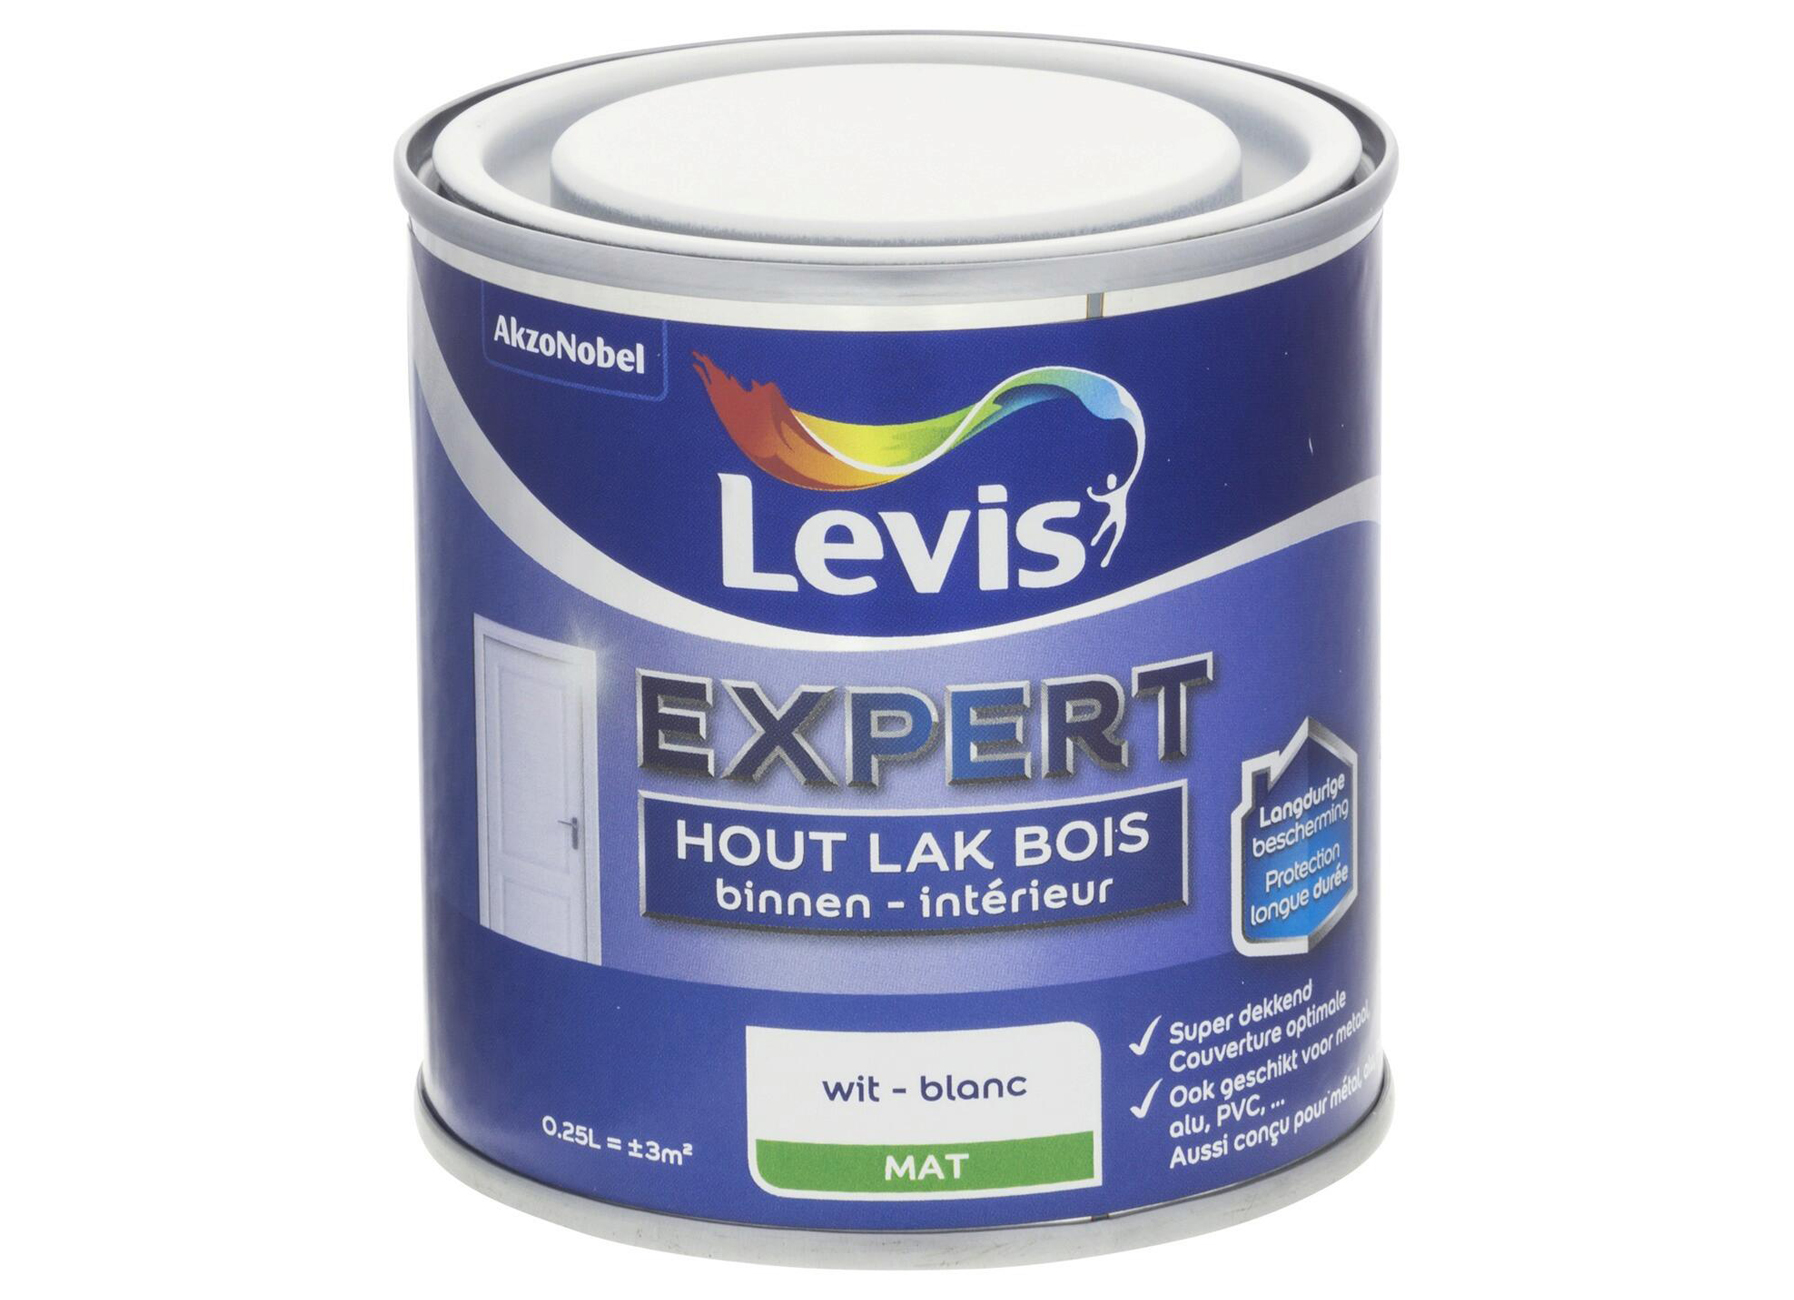 LEVIS EXPERT LAK BOIS INTERIEUR MAT BLANC 0,25L